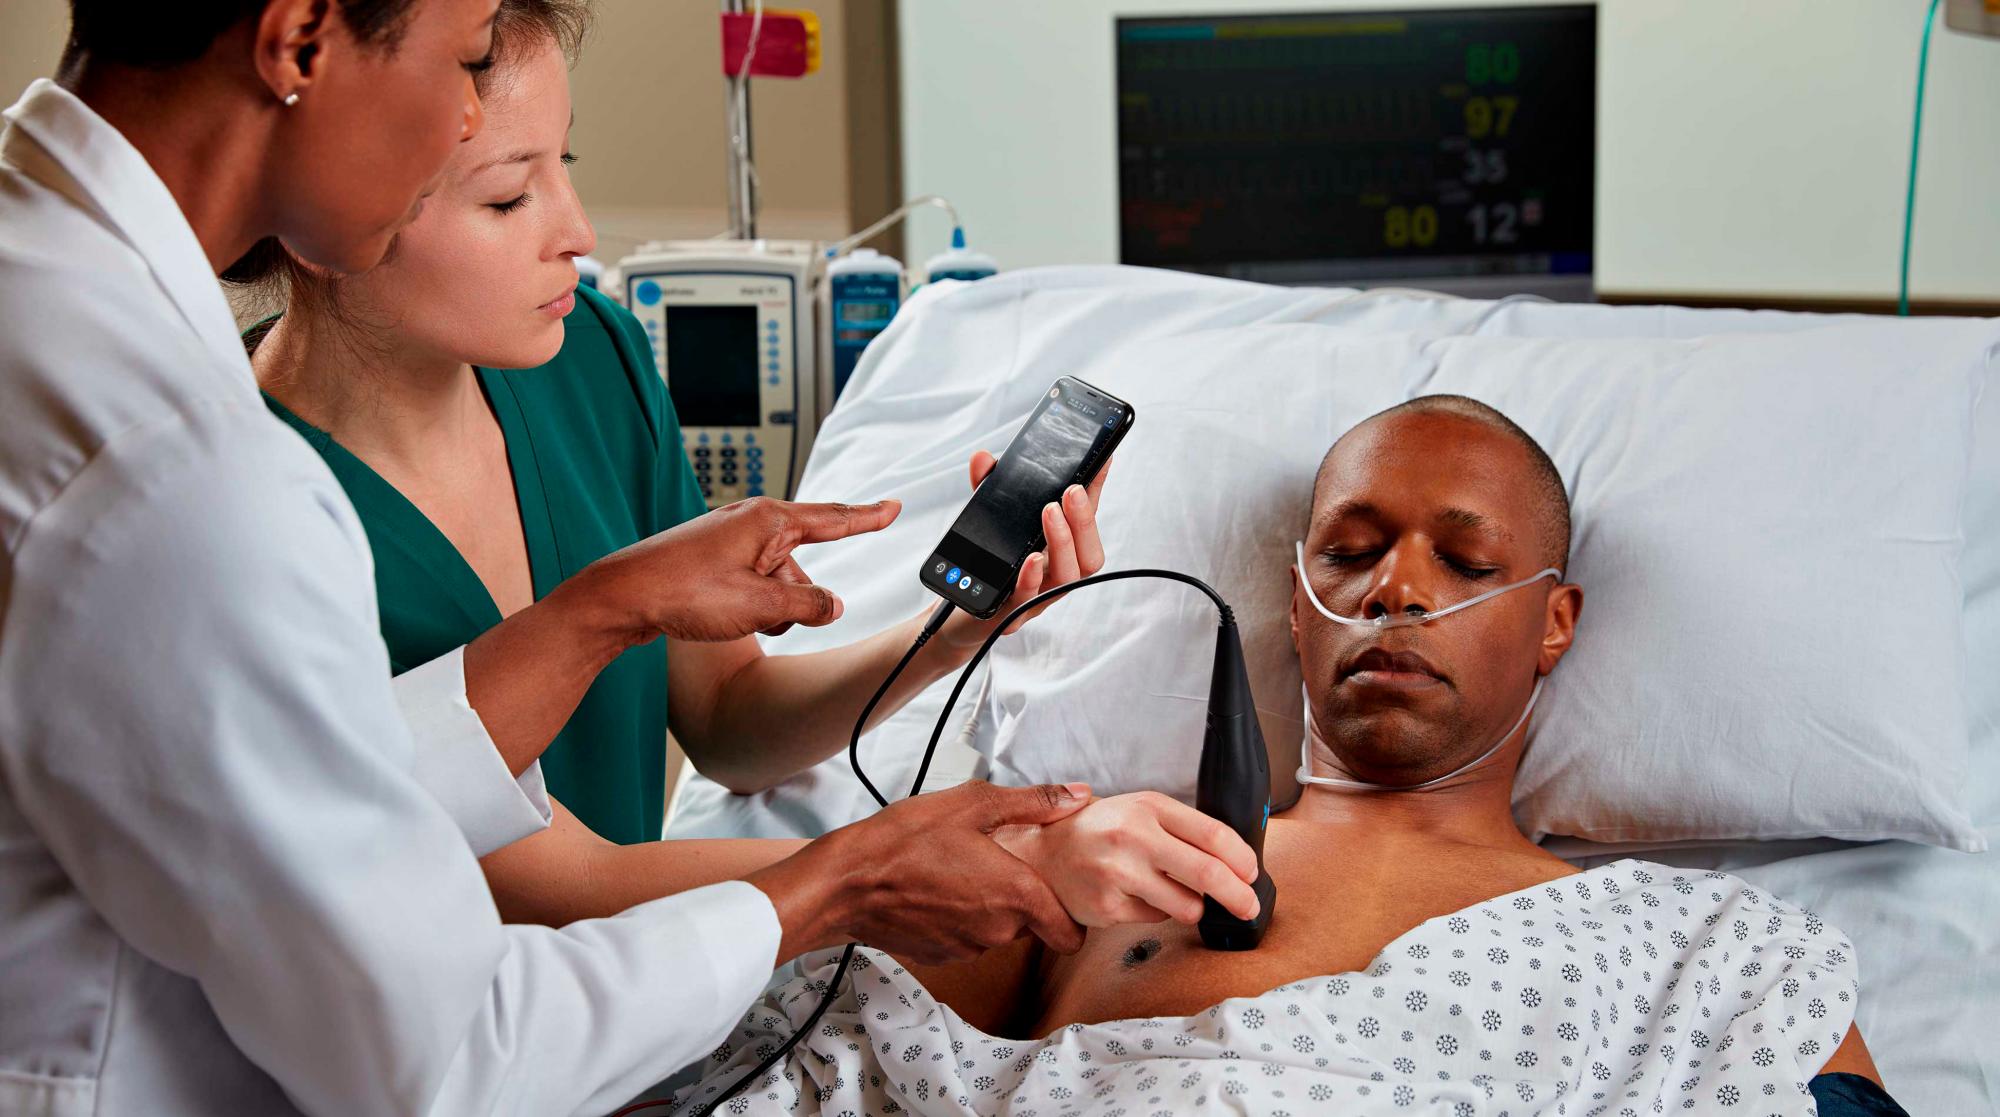 Aplicación de un escáner de ultrasonidos (ecógrafo) pequeño y de bajo costo en un hospital.